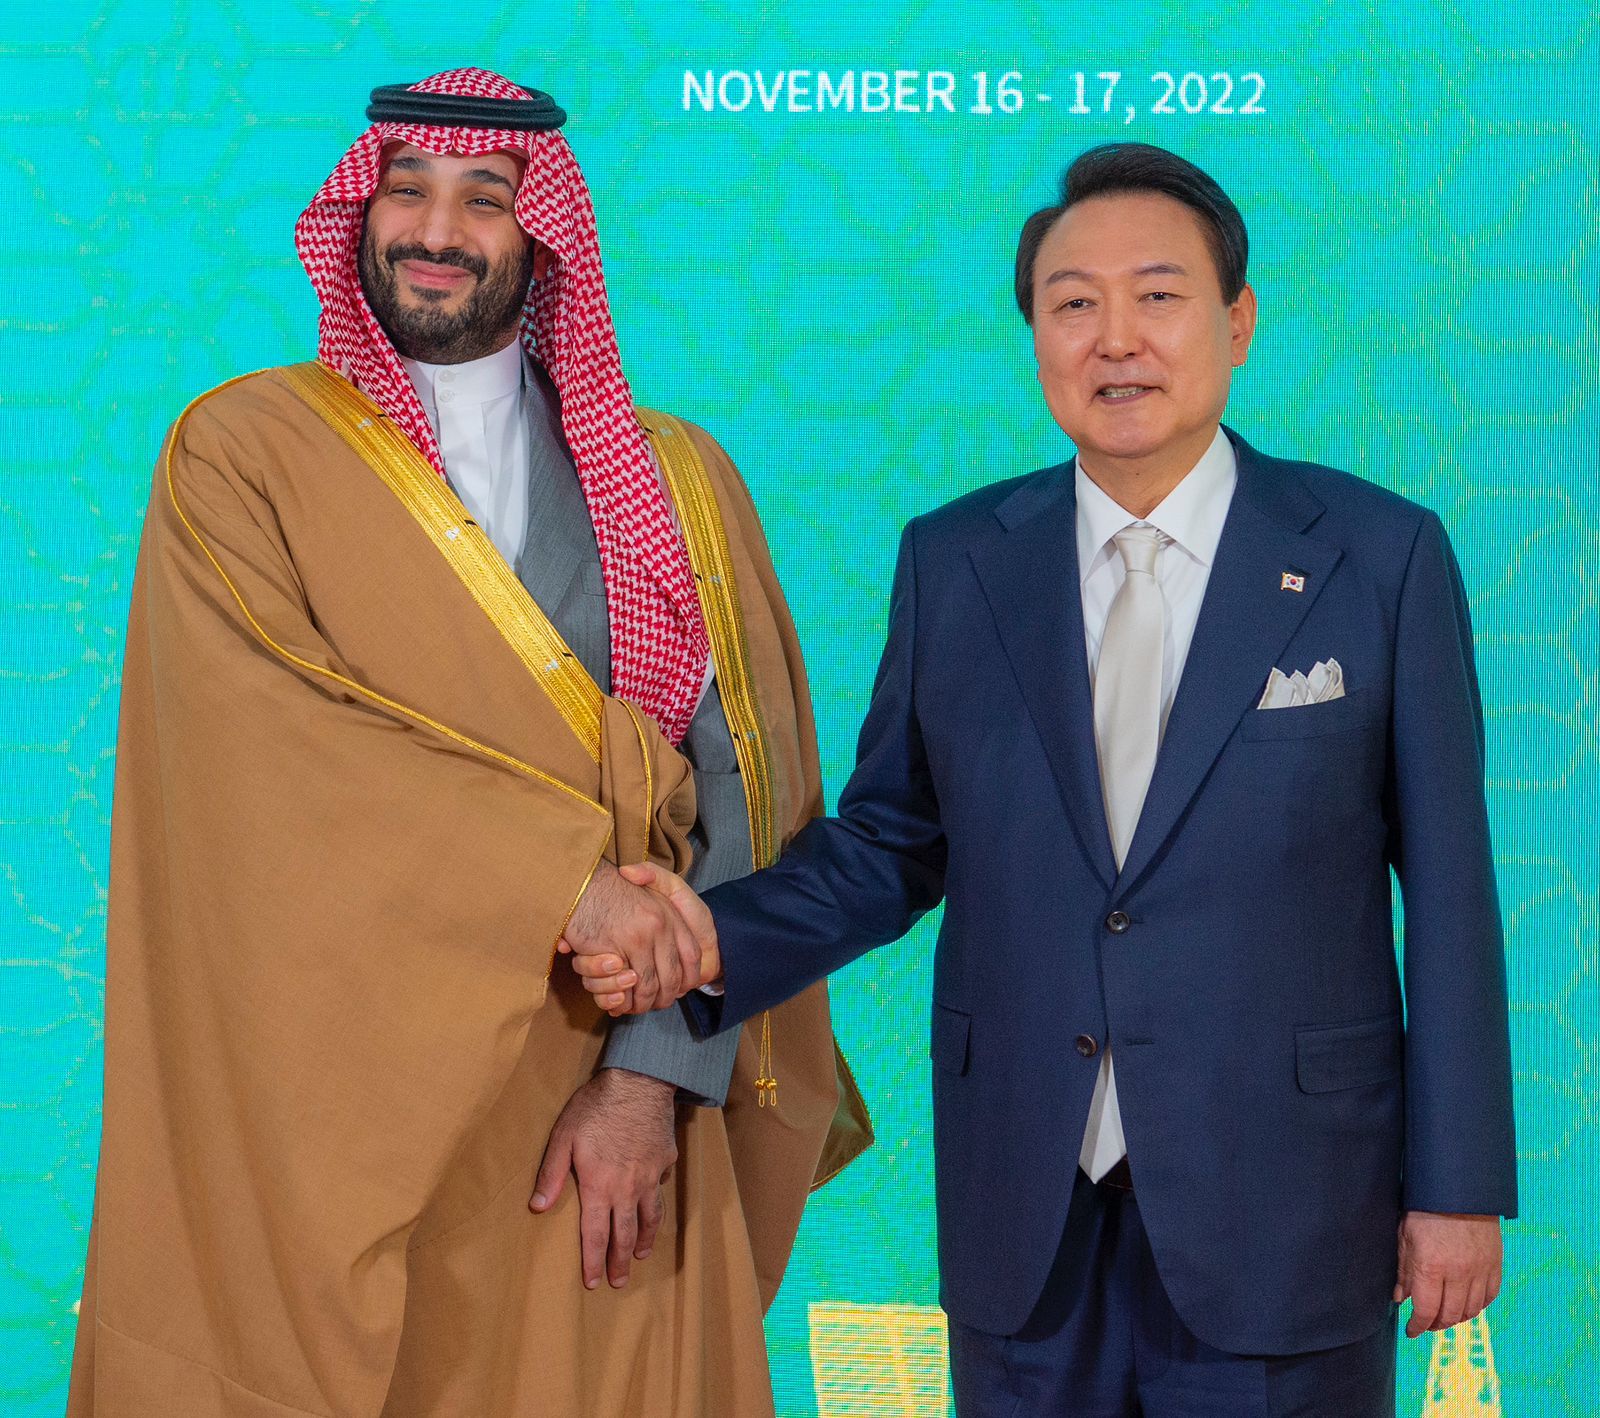 الطاقة النووية على أجندة مباحثات ولي العهد السعودي في كوريا